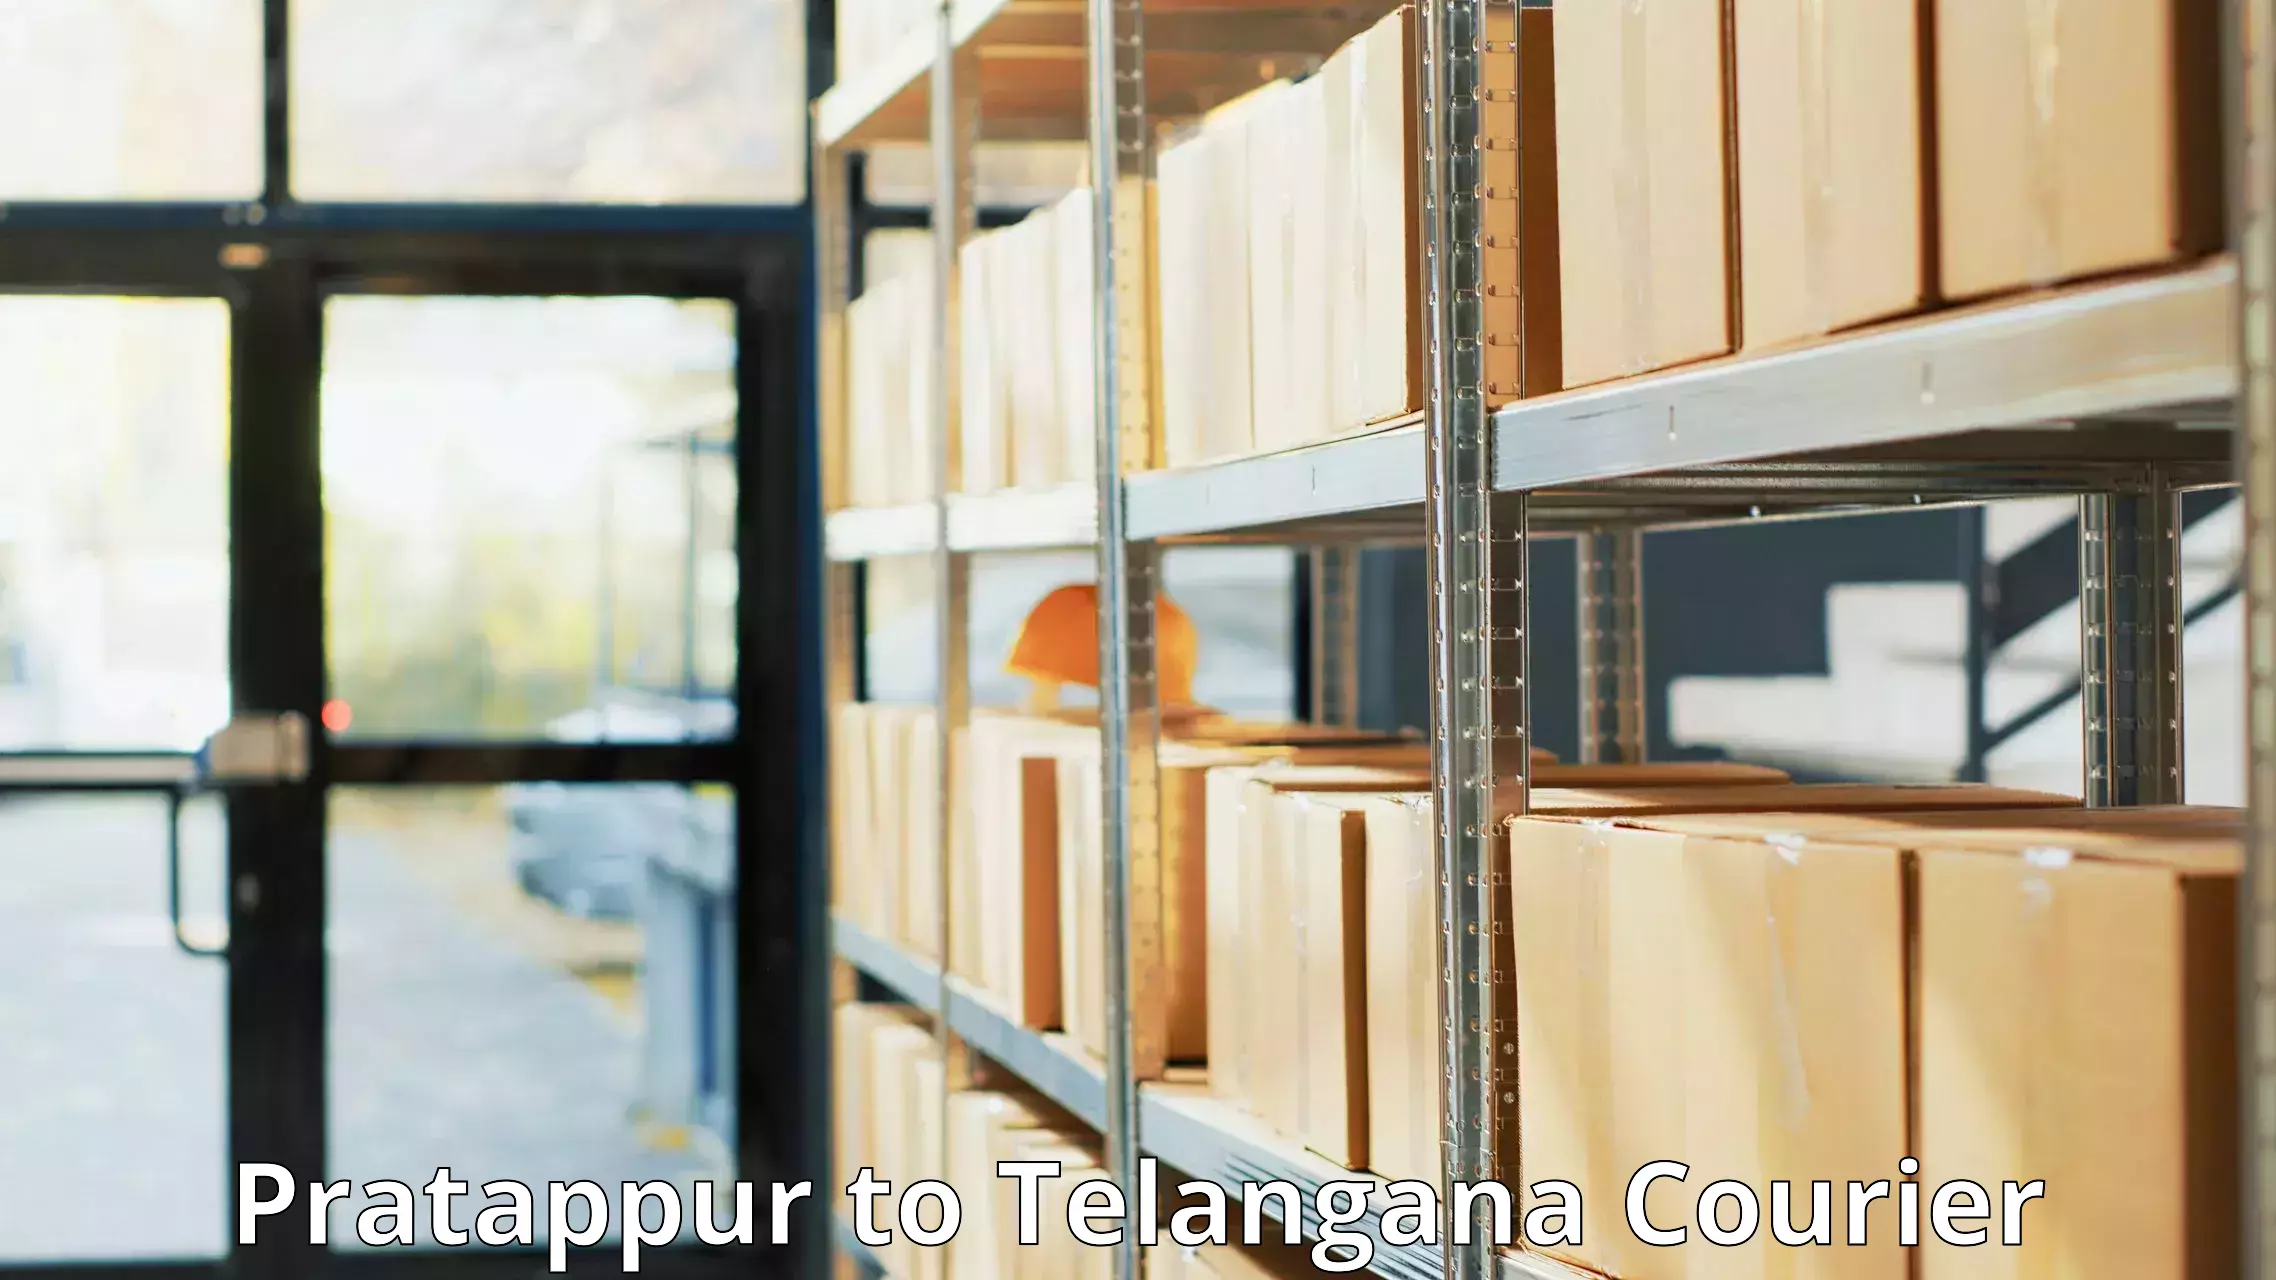 Nationwide courier service Pratappur to Karimnagar